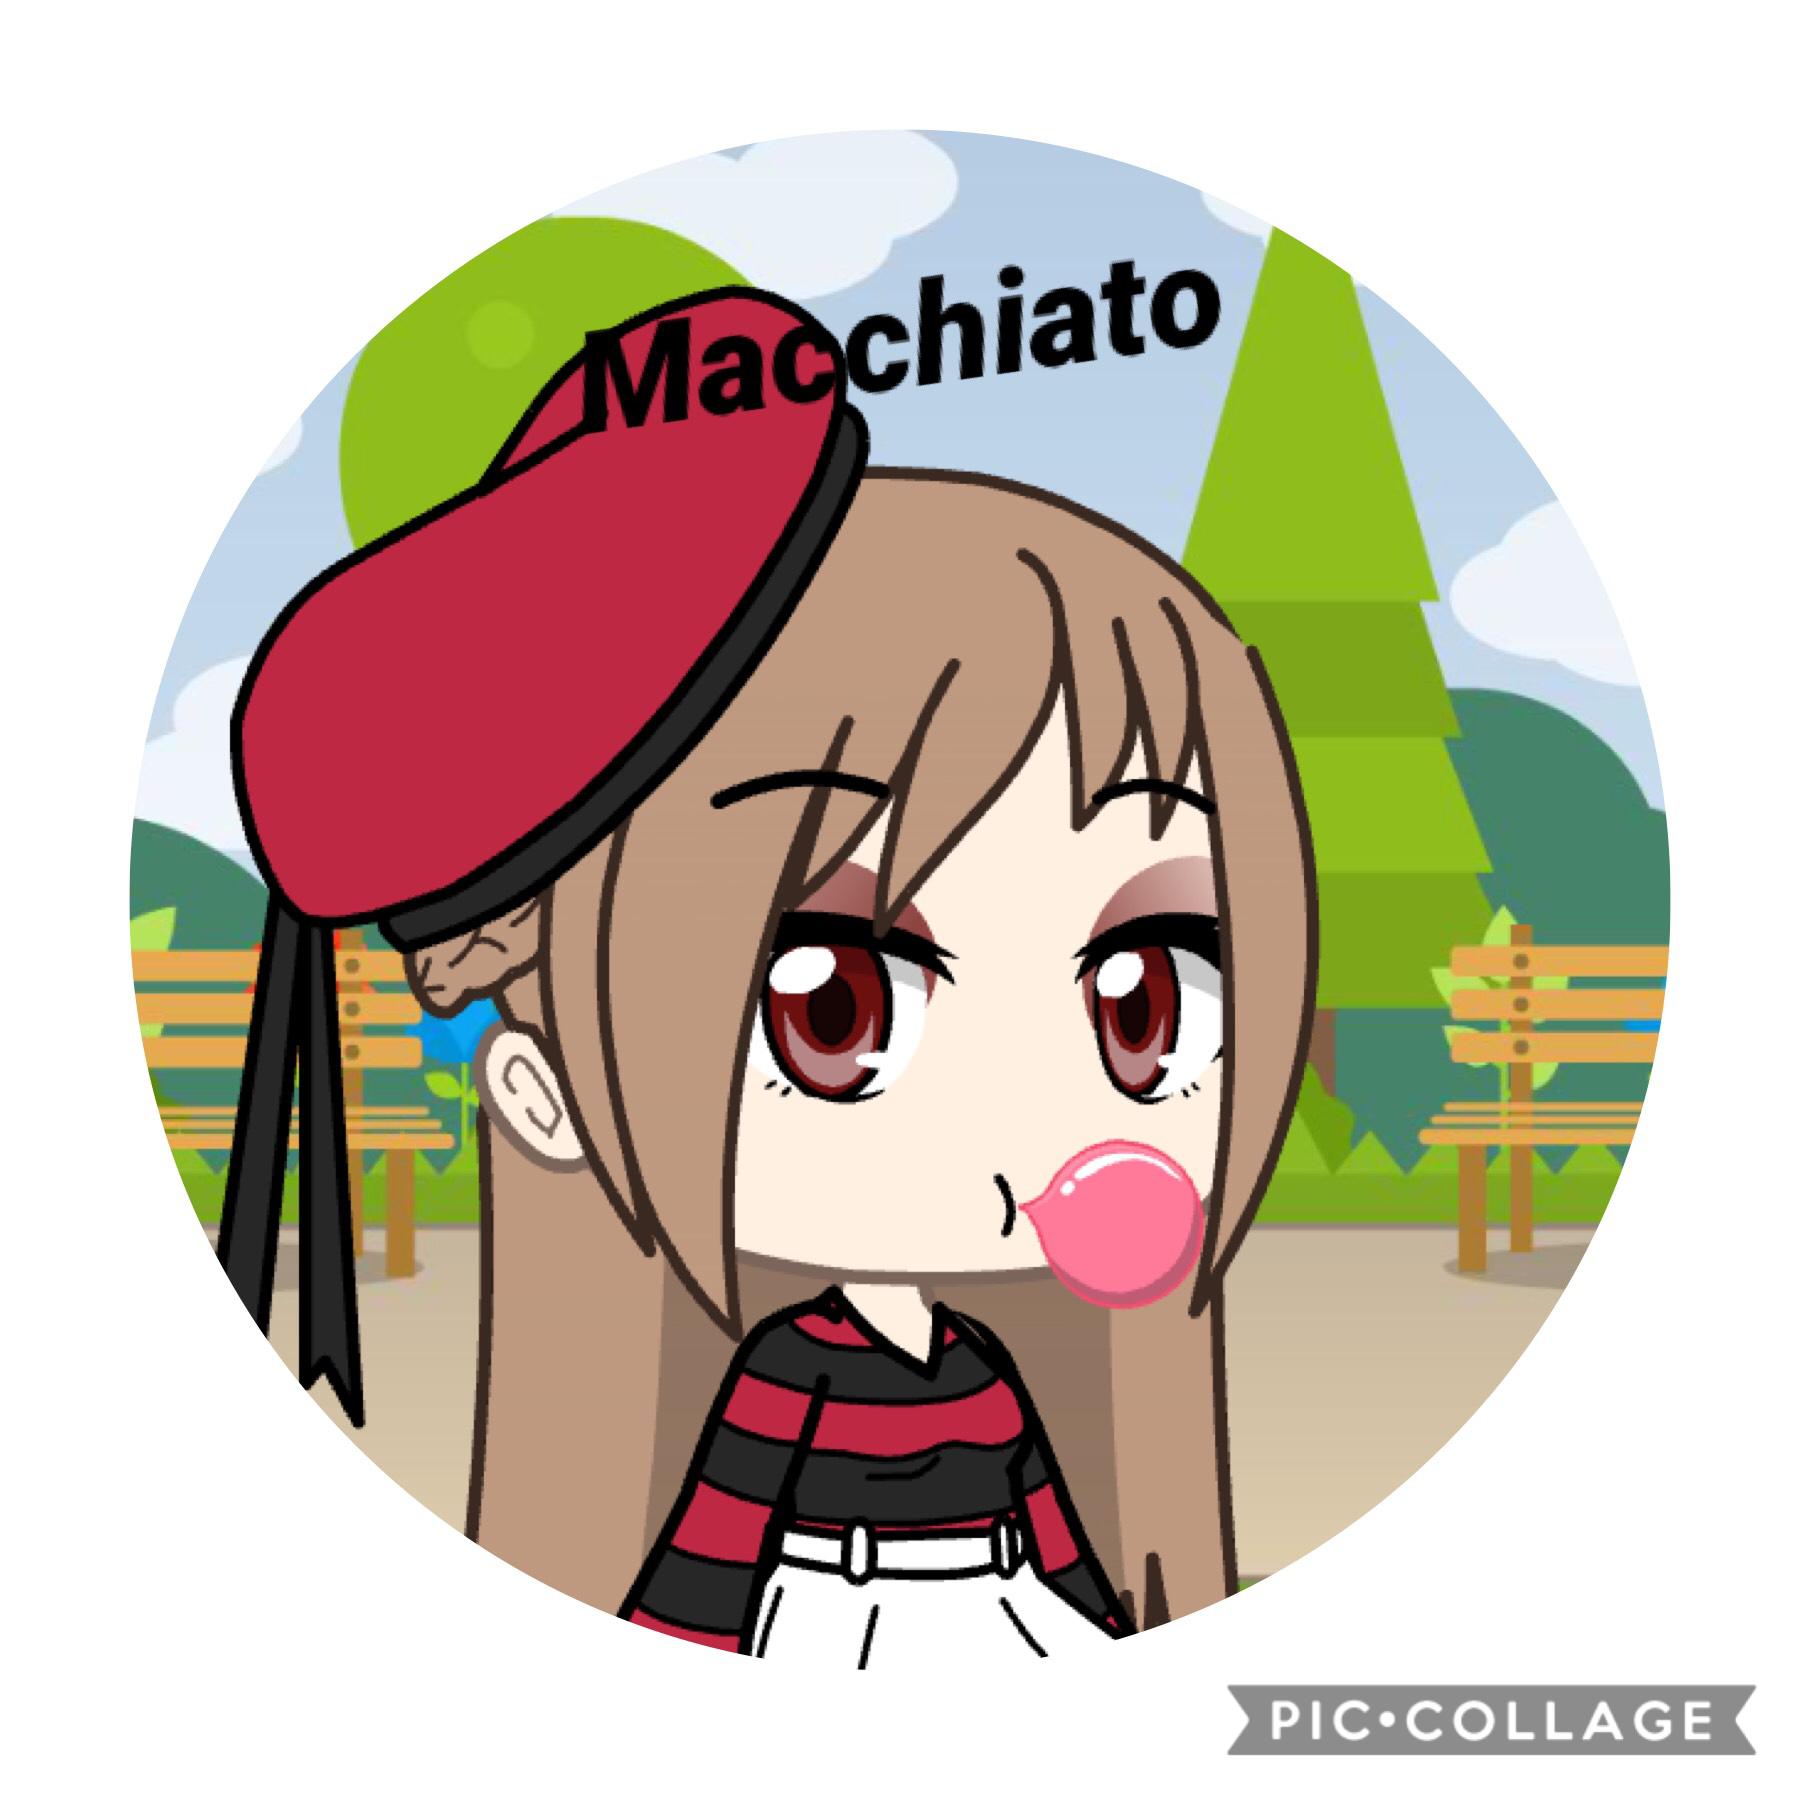 My Gacha character, Macchiato.